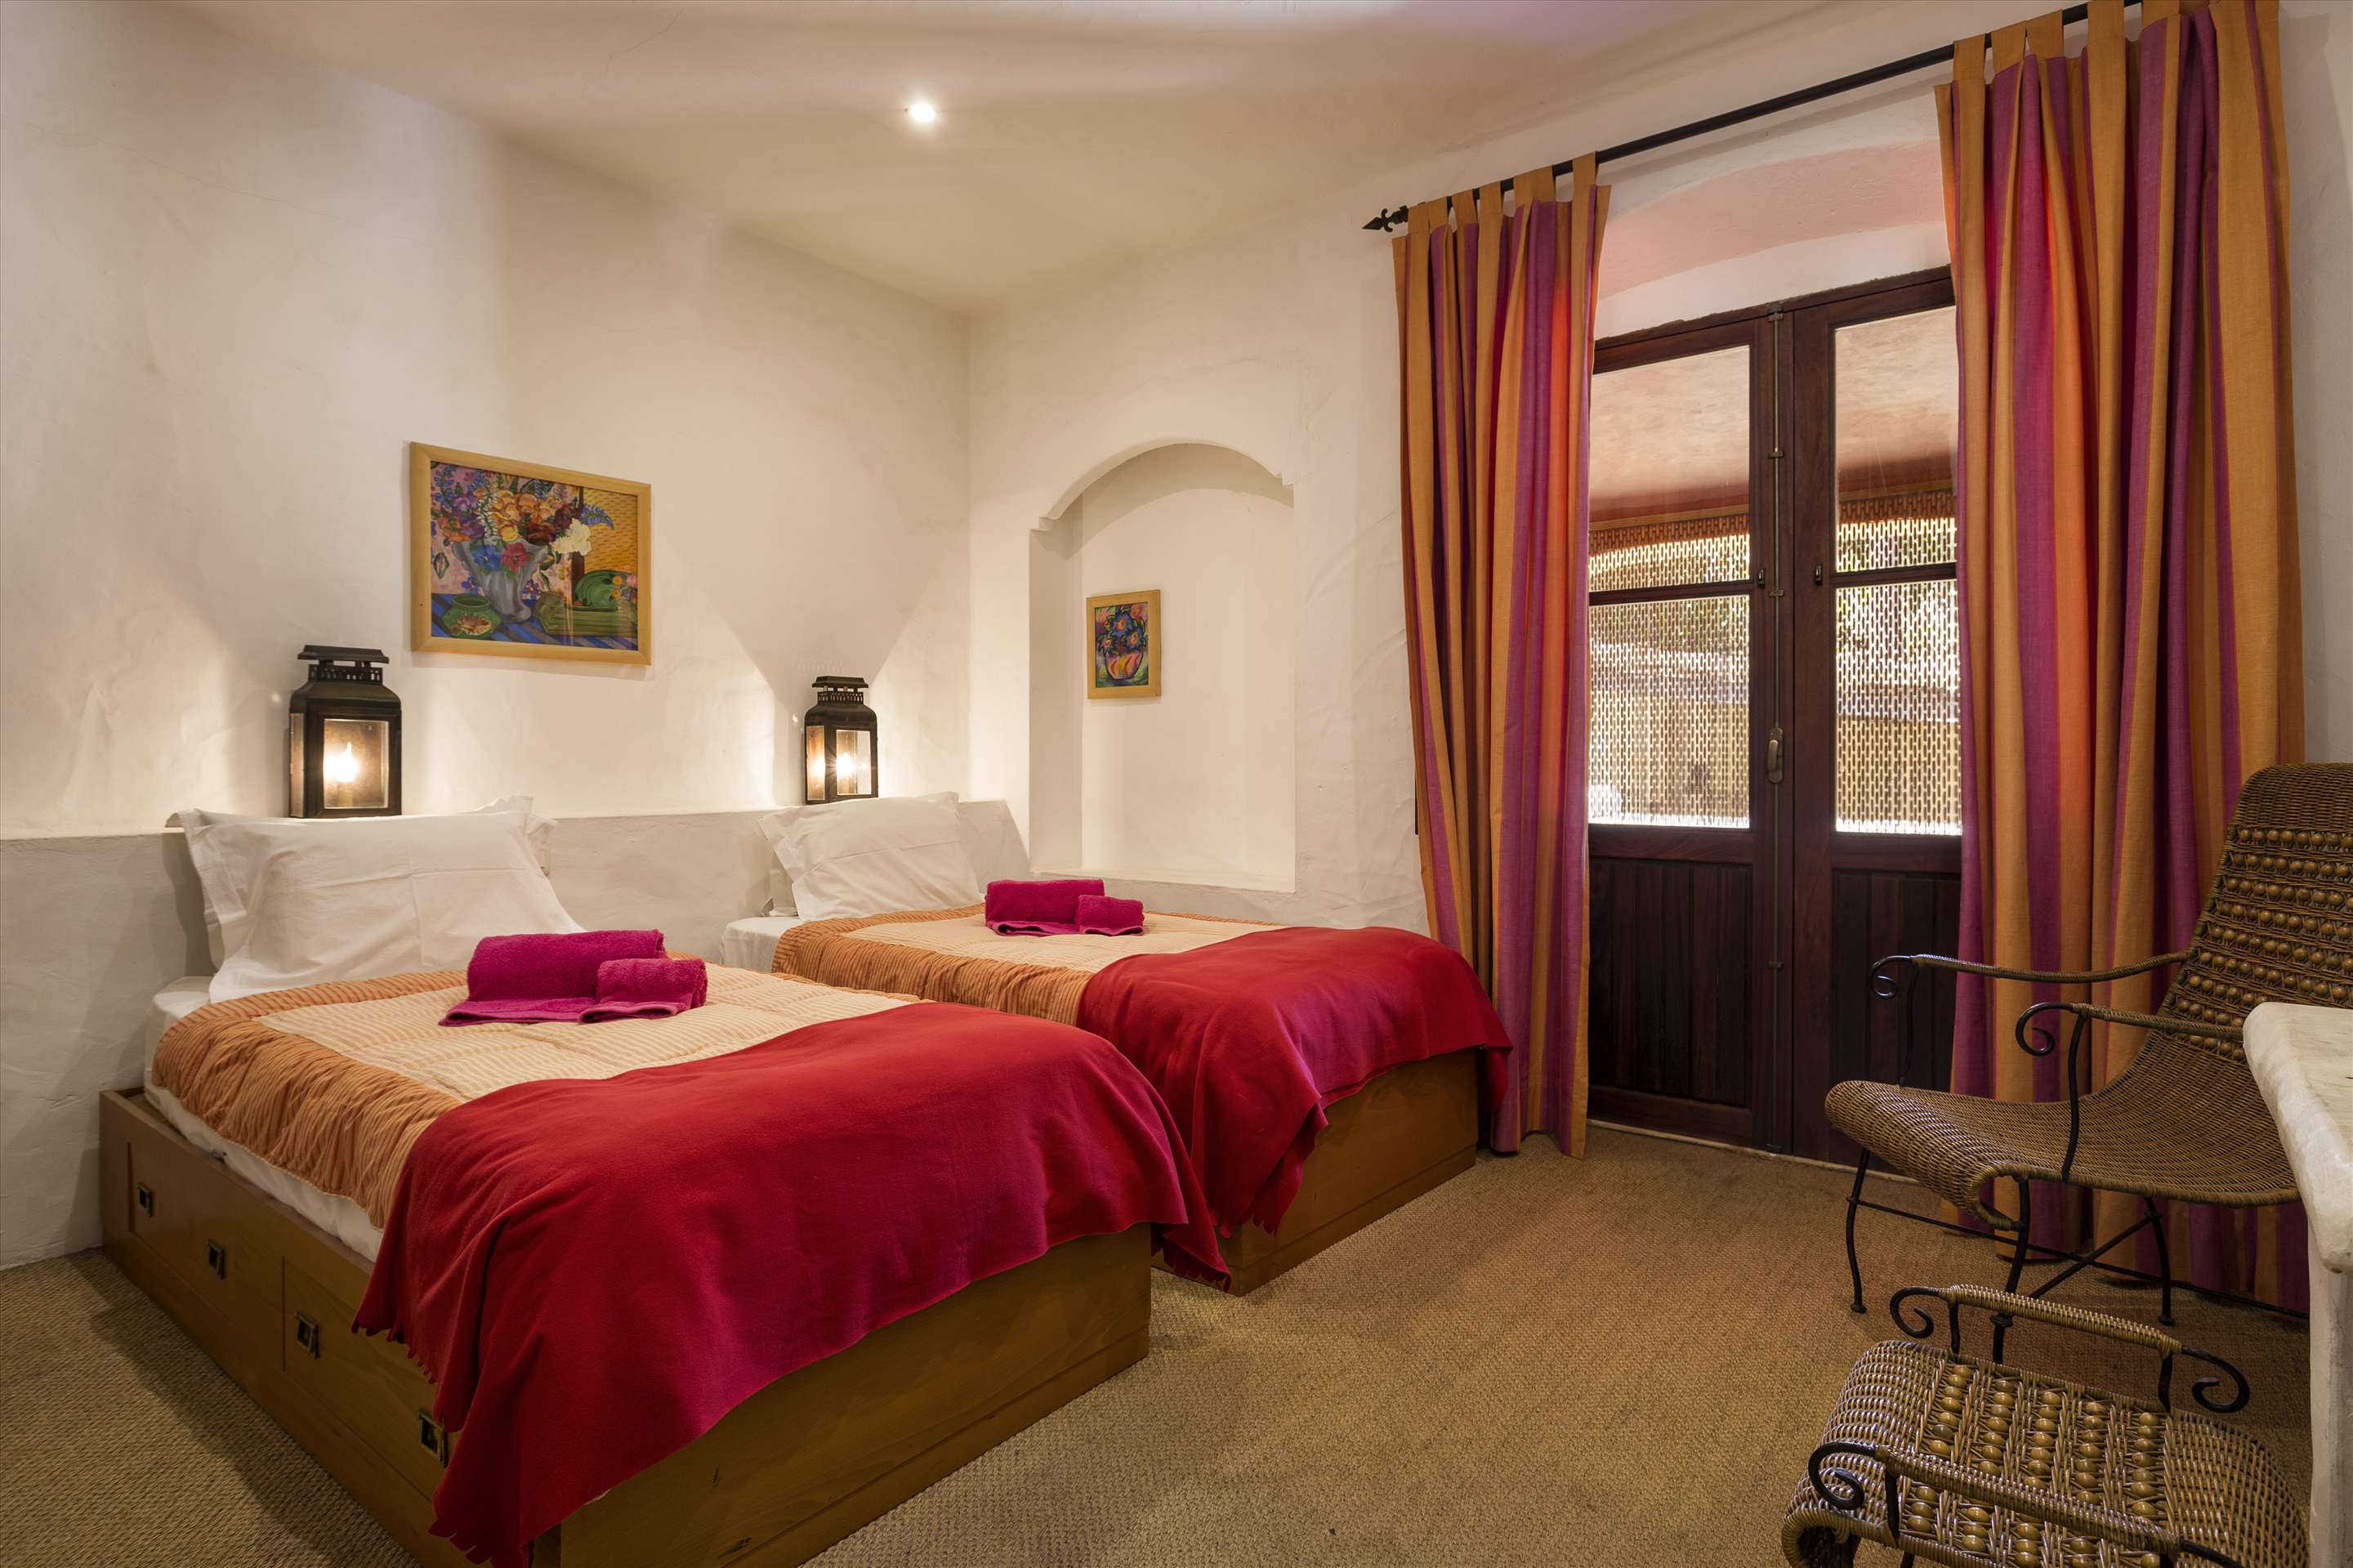 Villa Cristofina, 5 Bedroom, 5 bedroom villa in Vale do Lobo, Algarve Photo #23